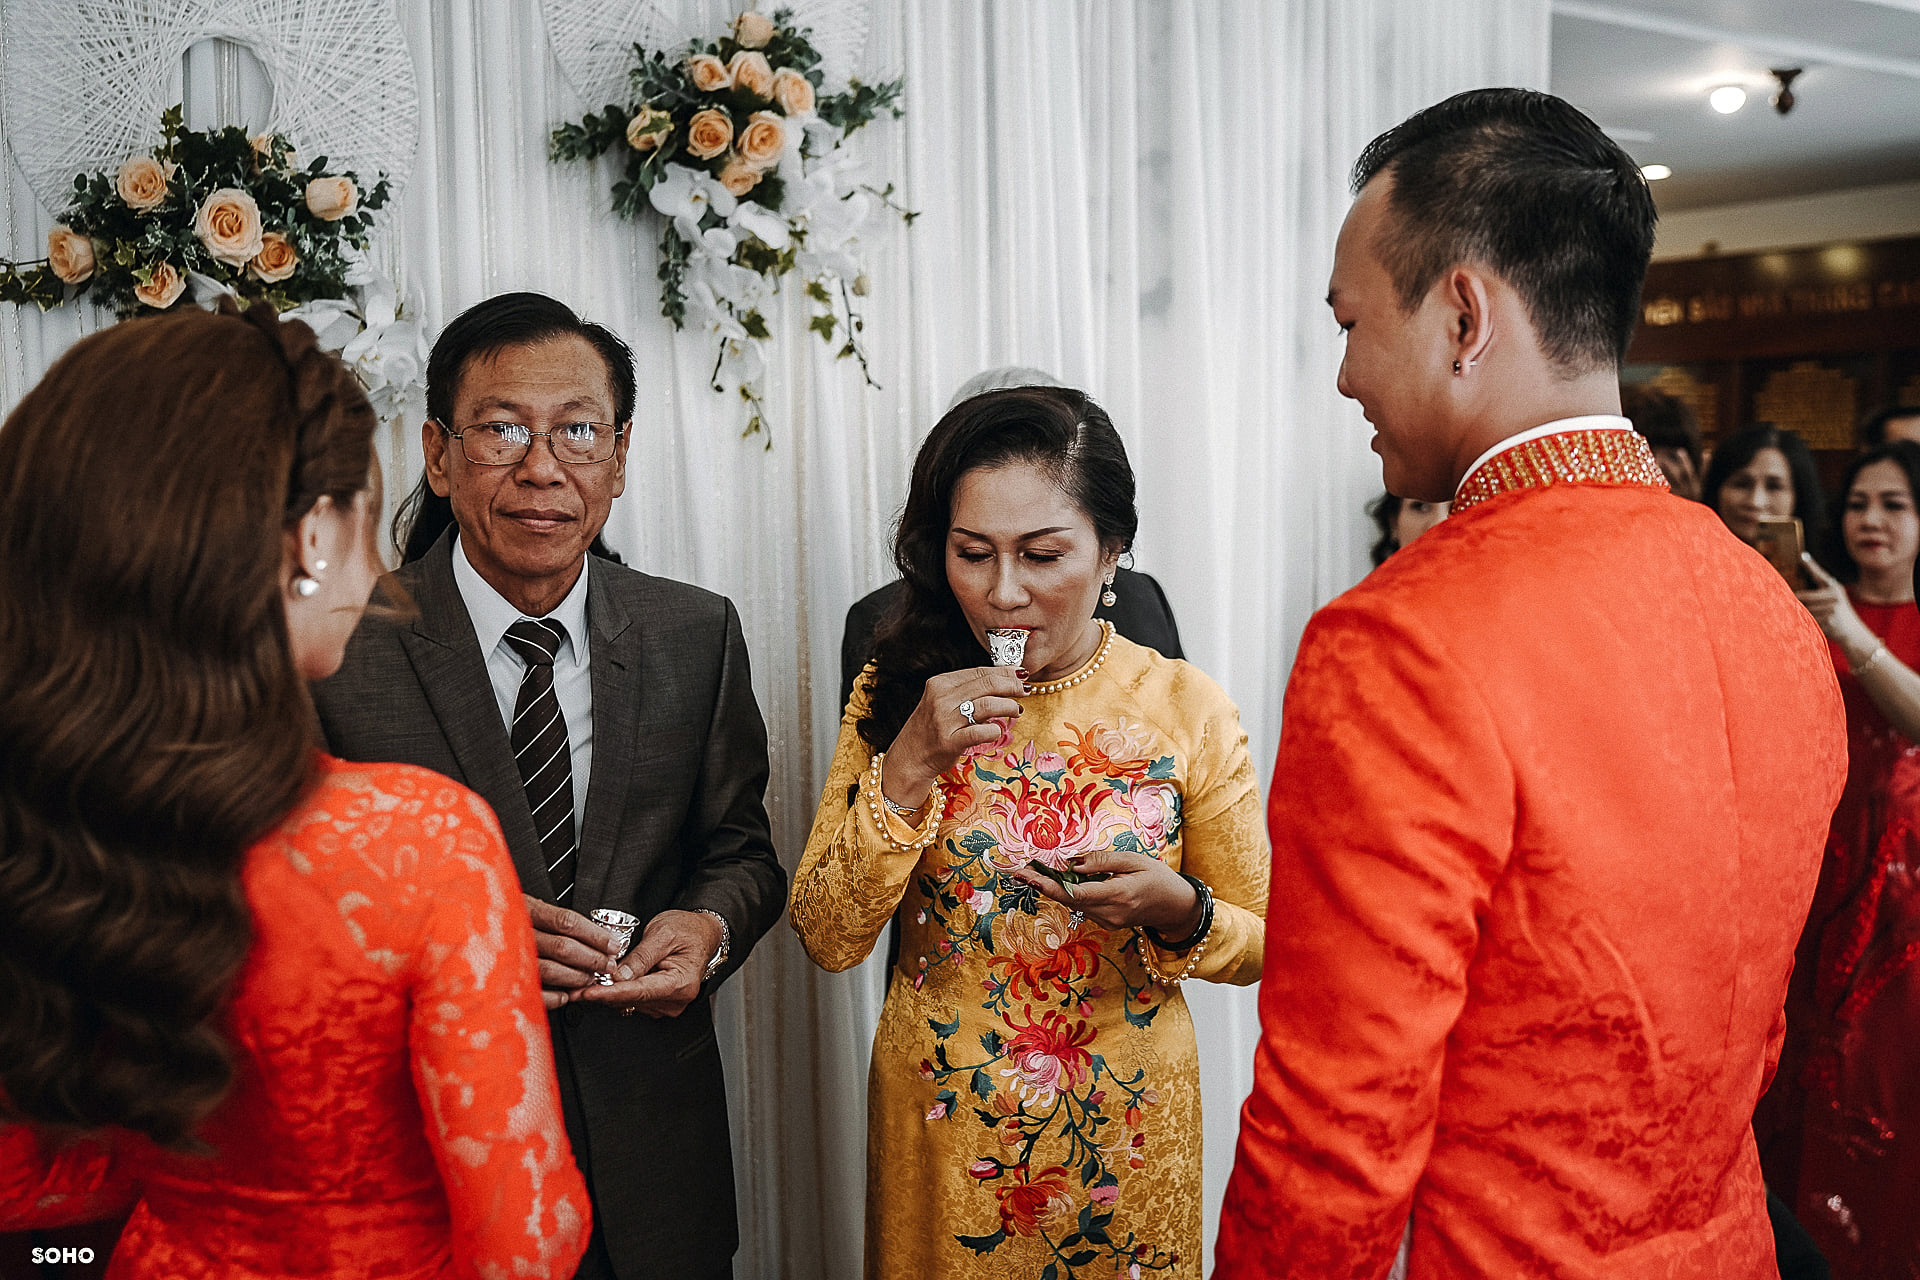 The Wedding Day | Vu & Sinh at Làng Yến Mai Sinh, Nha Trang, VN